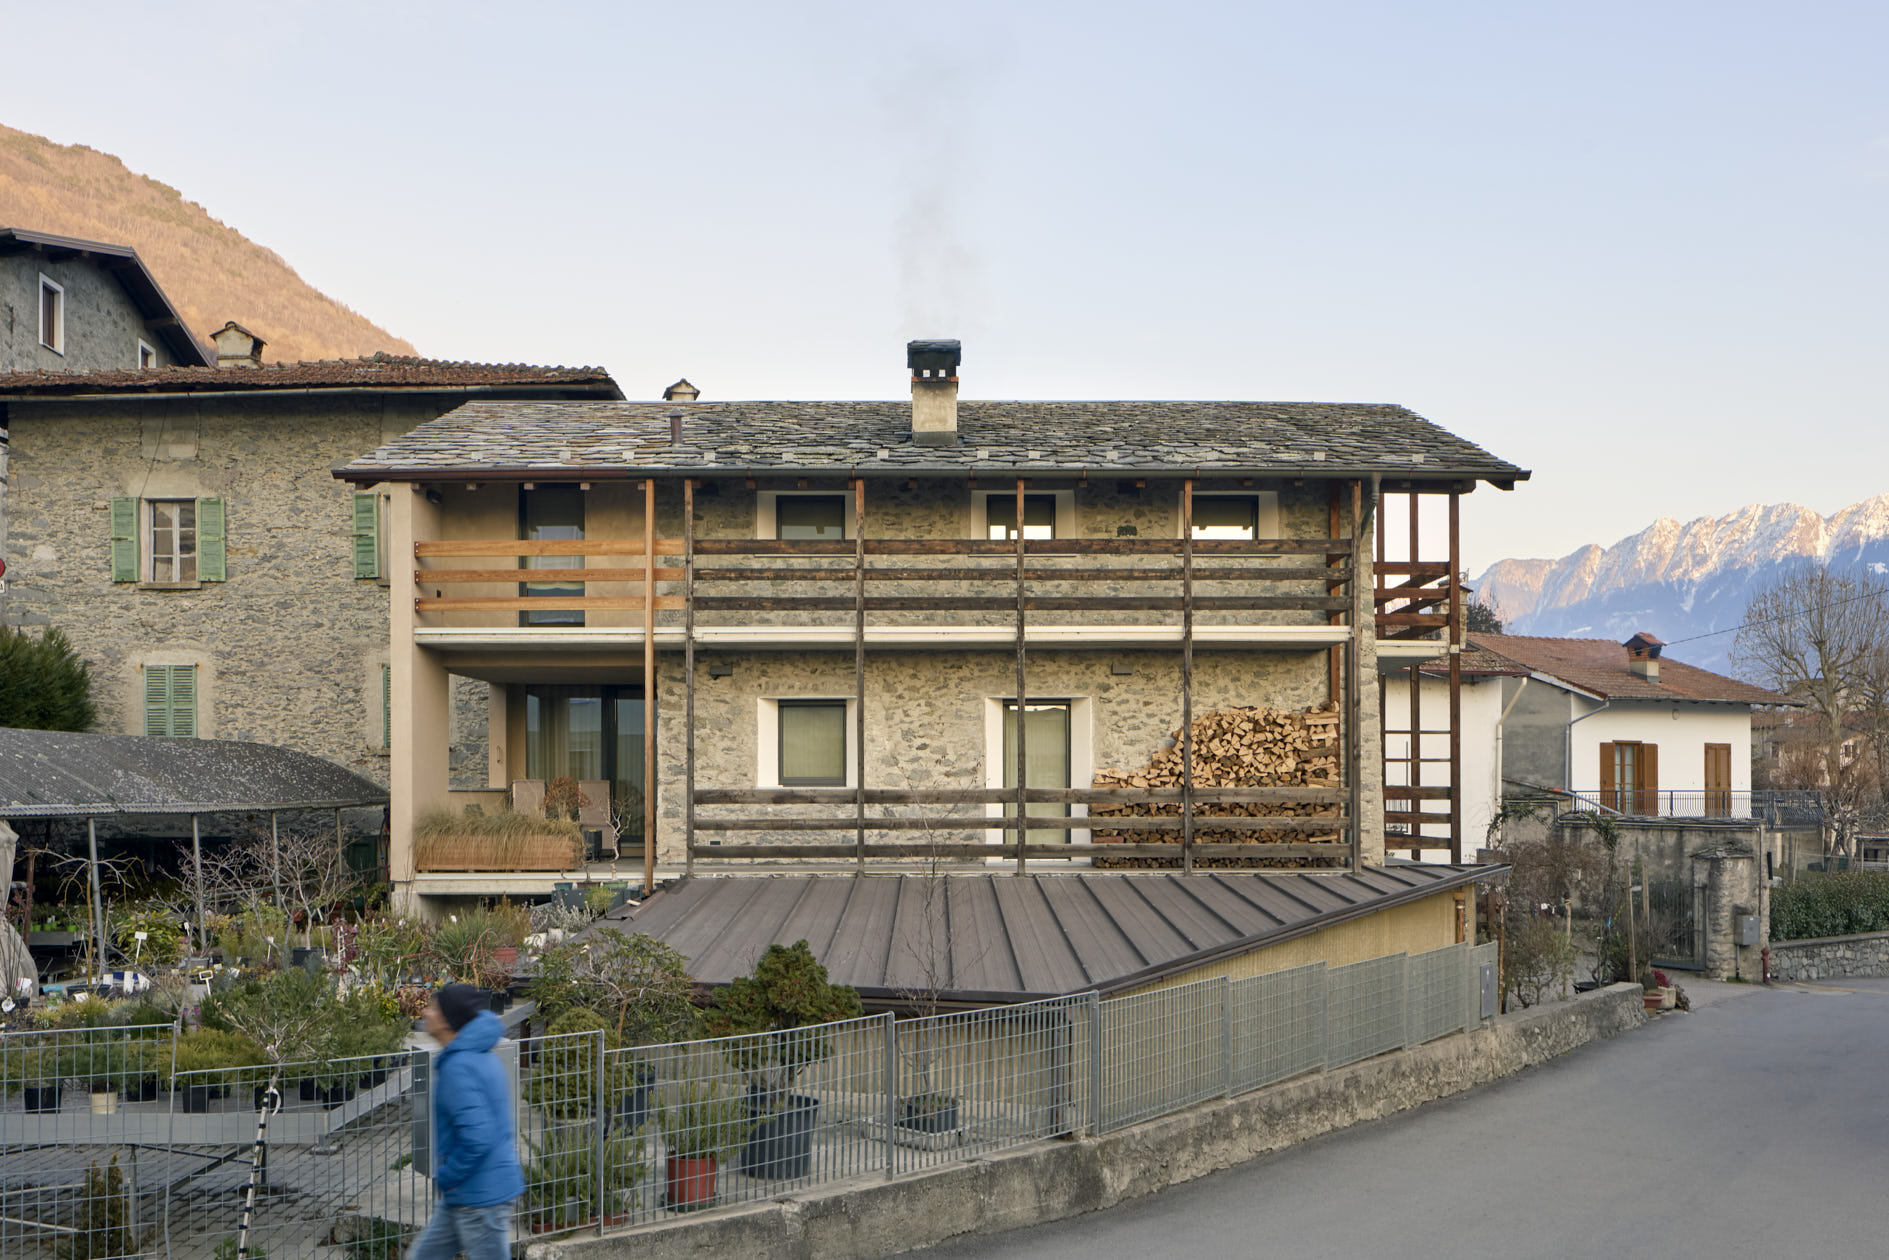 Recupero architettonico alpino - Alpine refurbishment